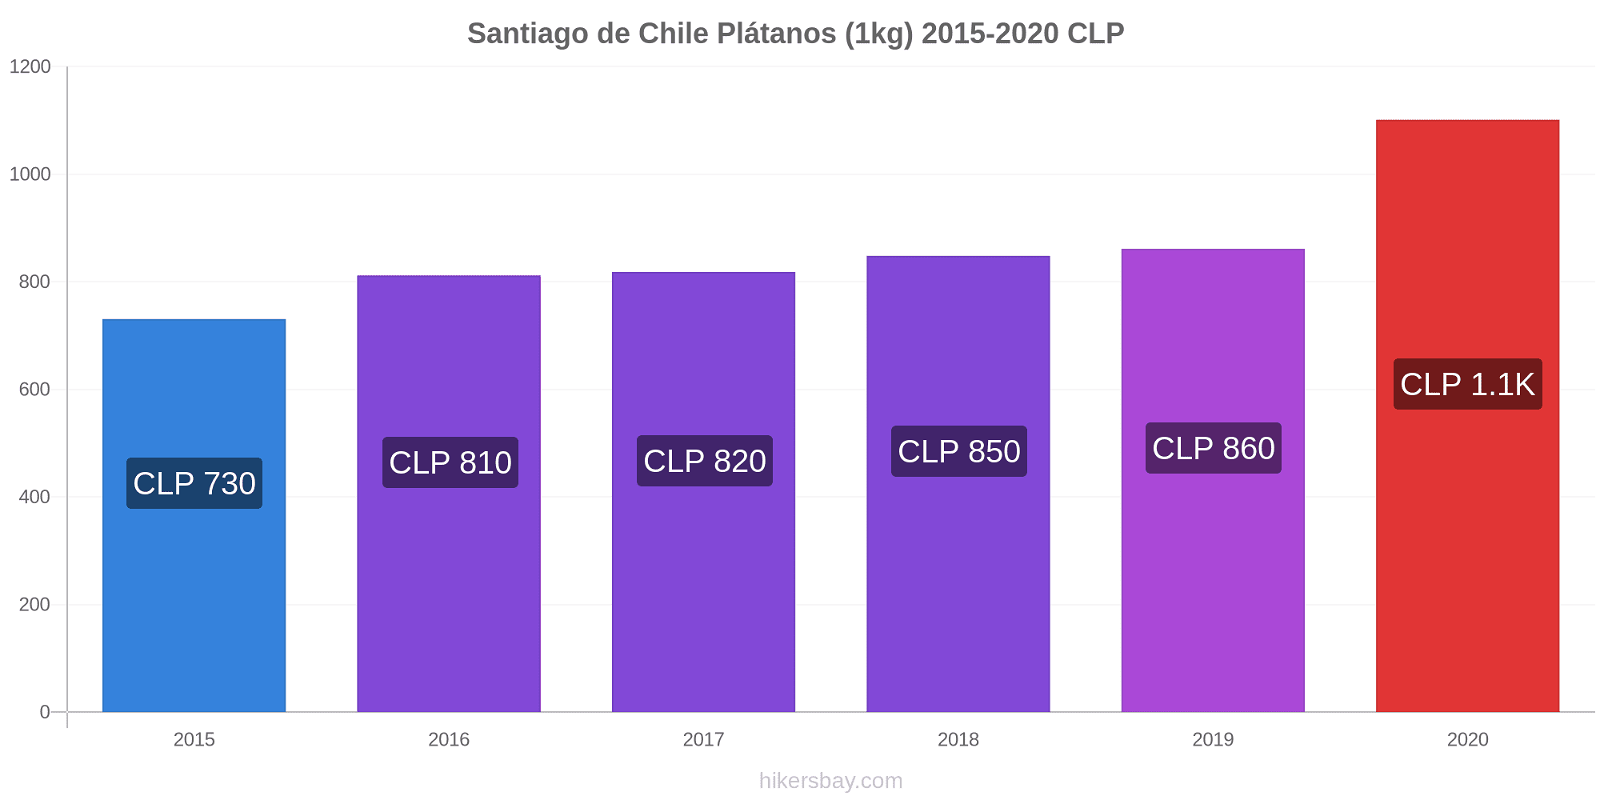 Santiago de Chile cambios de precios Plátano (1kg) hikersbay.com